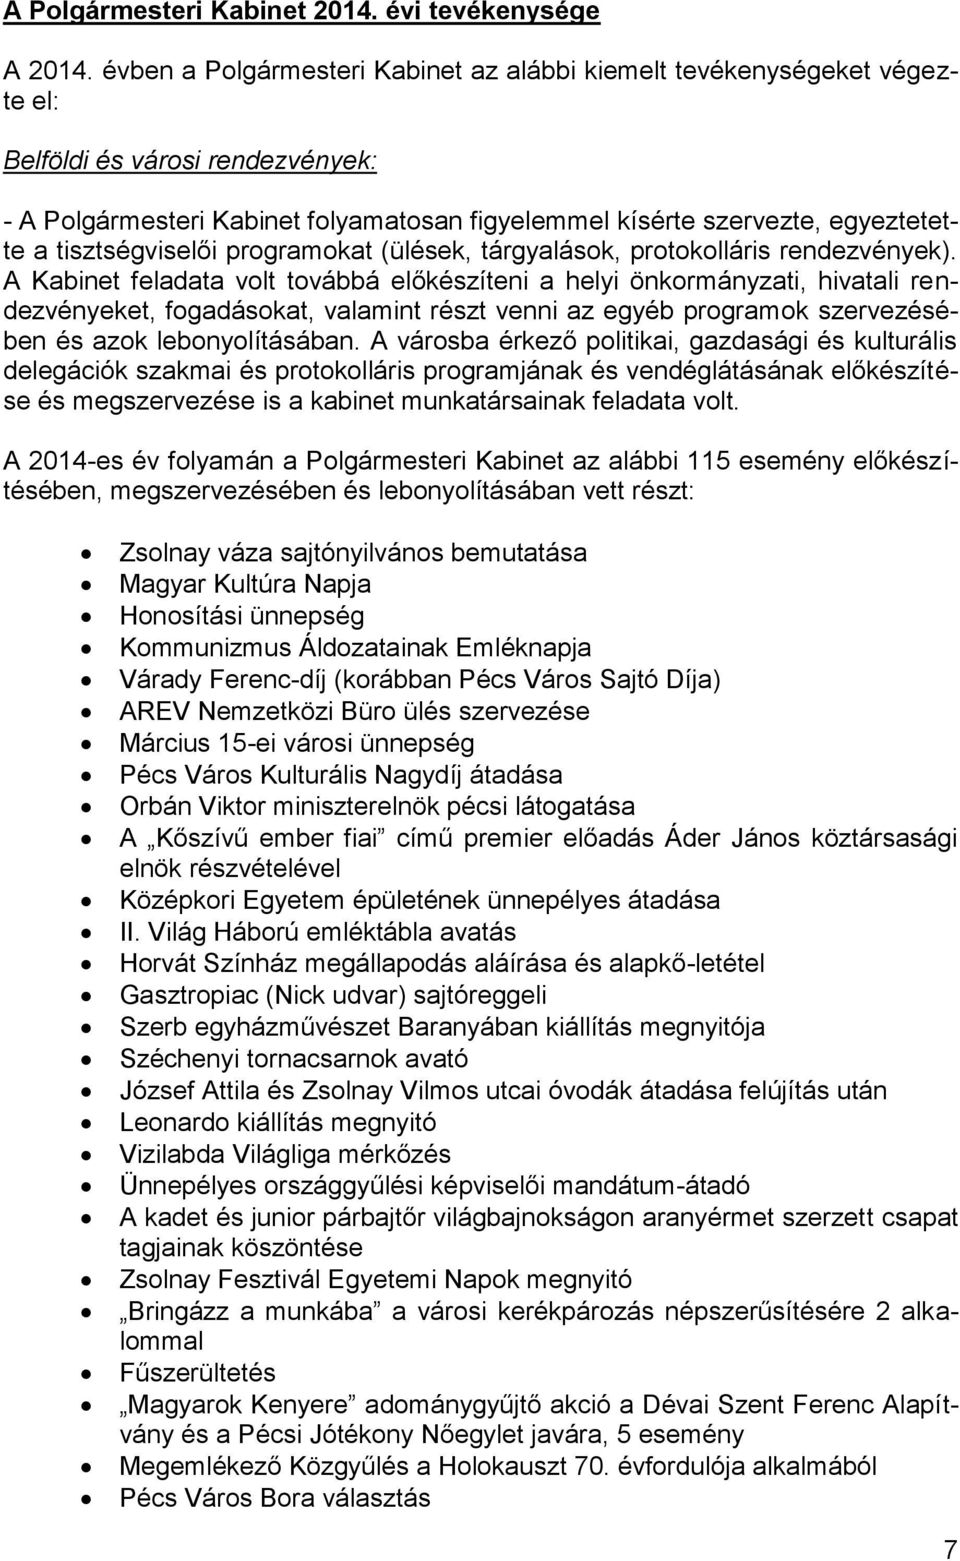 tisztségviselői programokat (ülések, tárgyalások, protokolláris rendezvények).